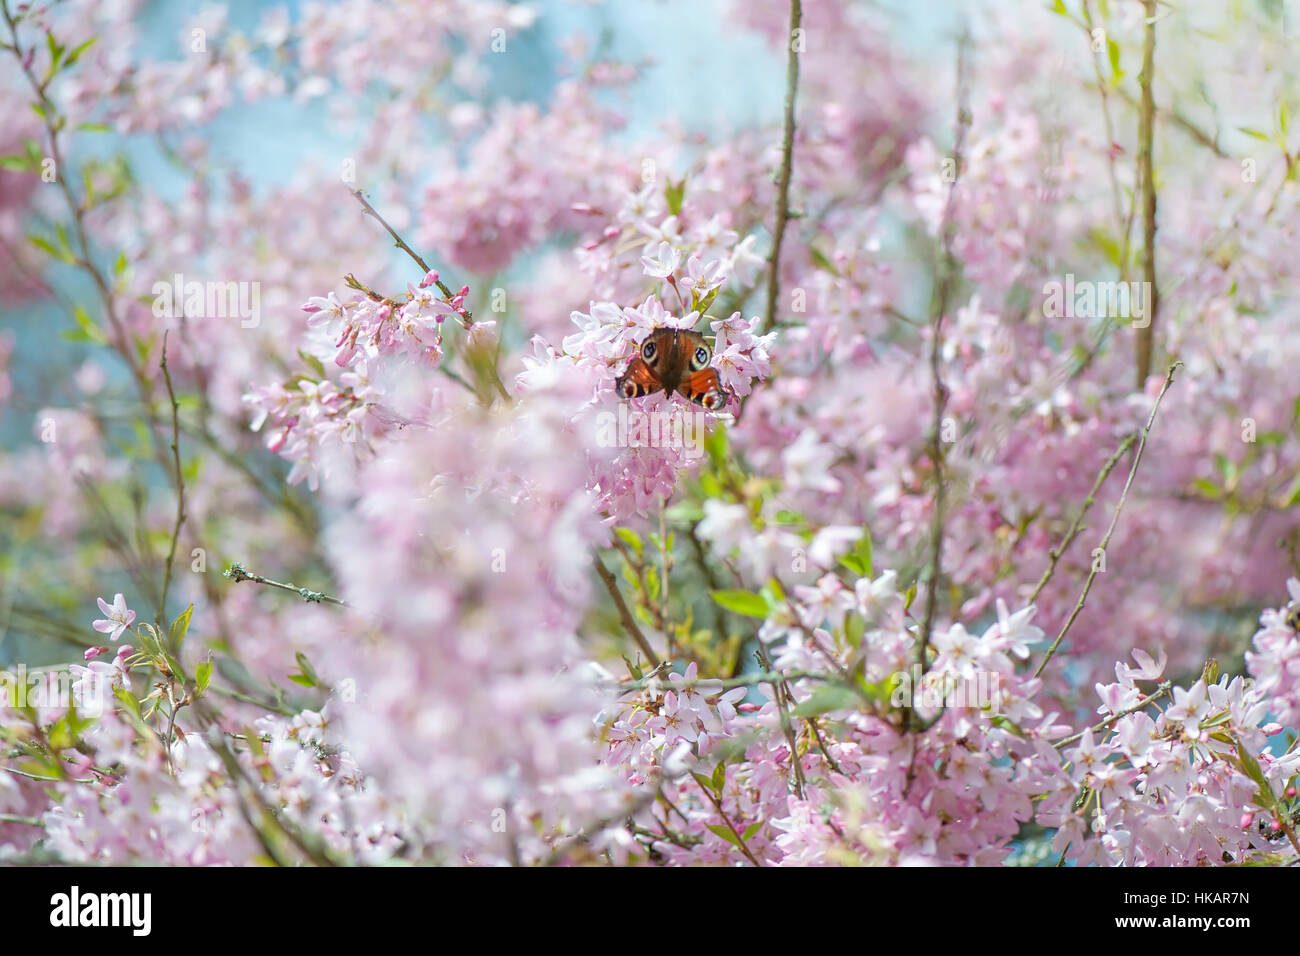 Les délicates fleurs roses du printemps de la magnolia arbre/arbuste, image prise contre un ciel bleu avec un fond musical. Banque D'Images